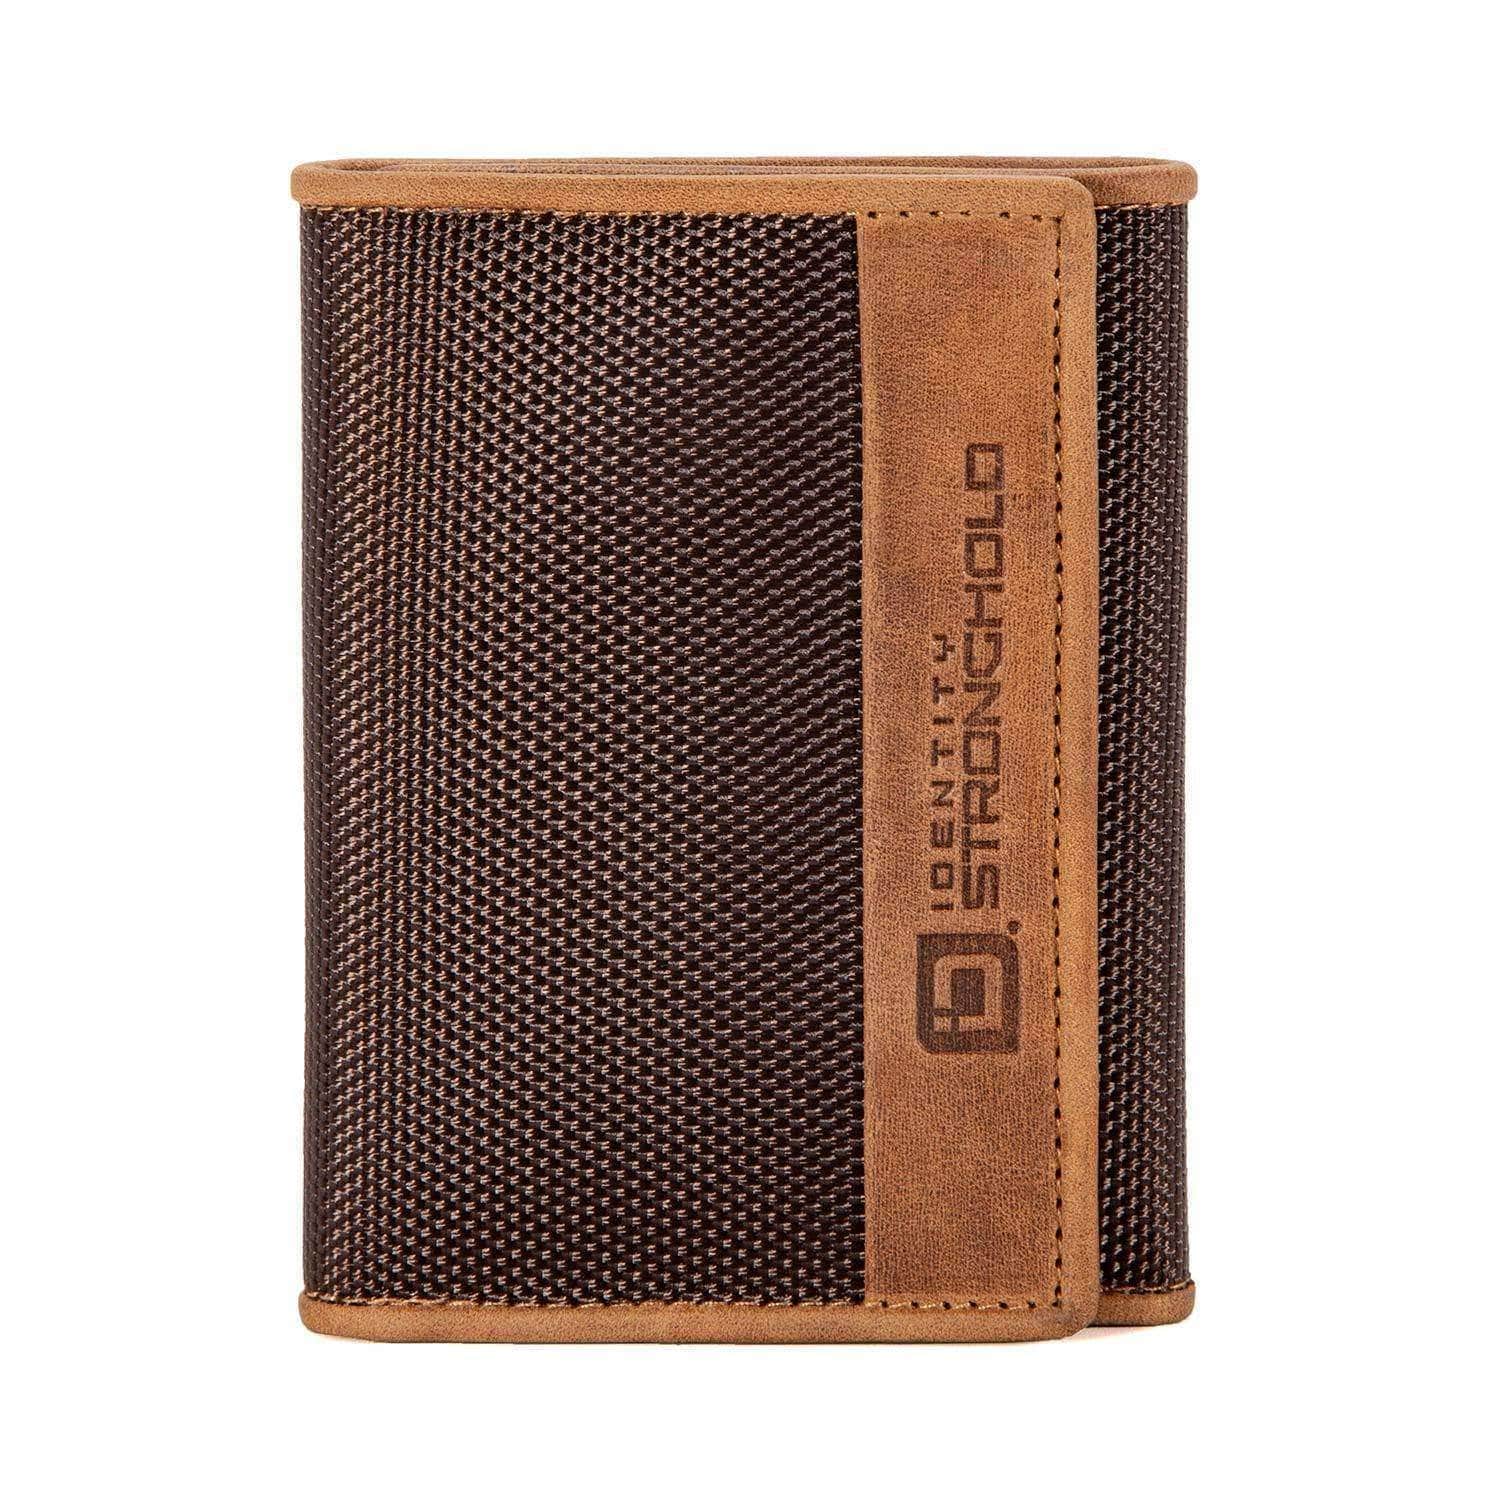 Slim Fold Wallet, Product Details